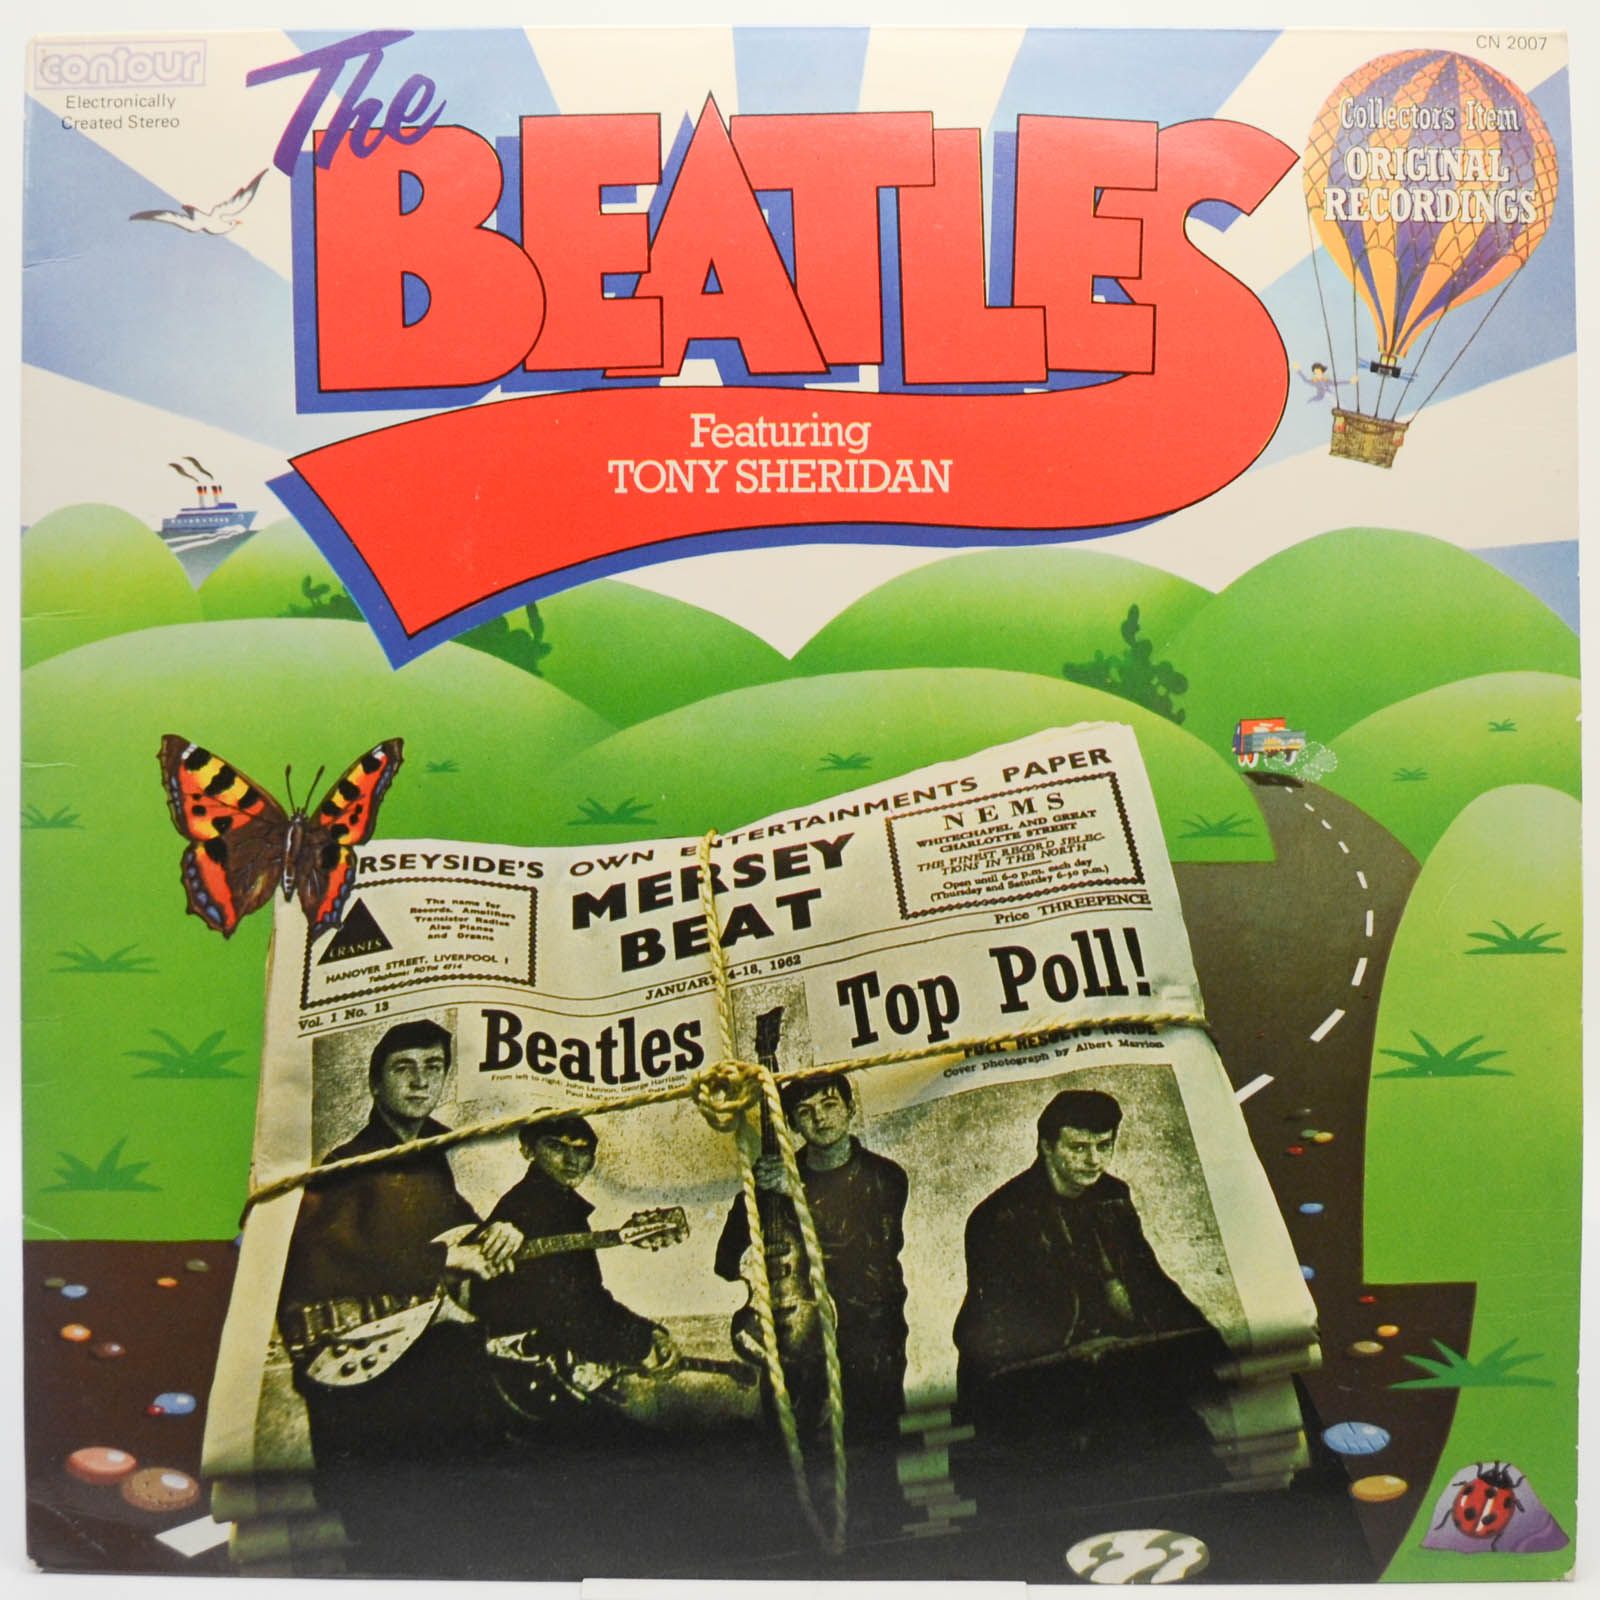 Beatles Featuring Tony Sheridan — The Beatles Featuring Tony Sheridan (UK), 1964